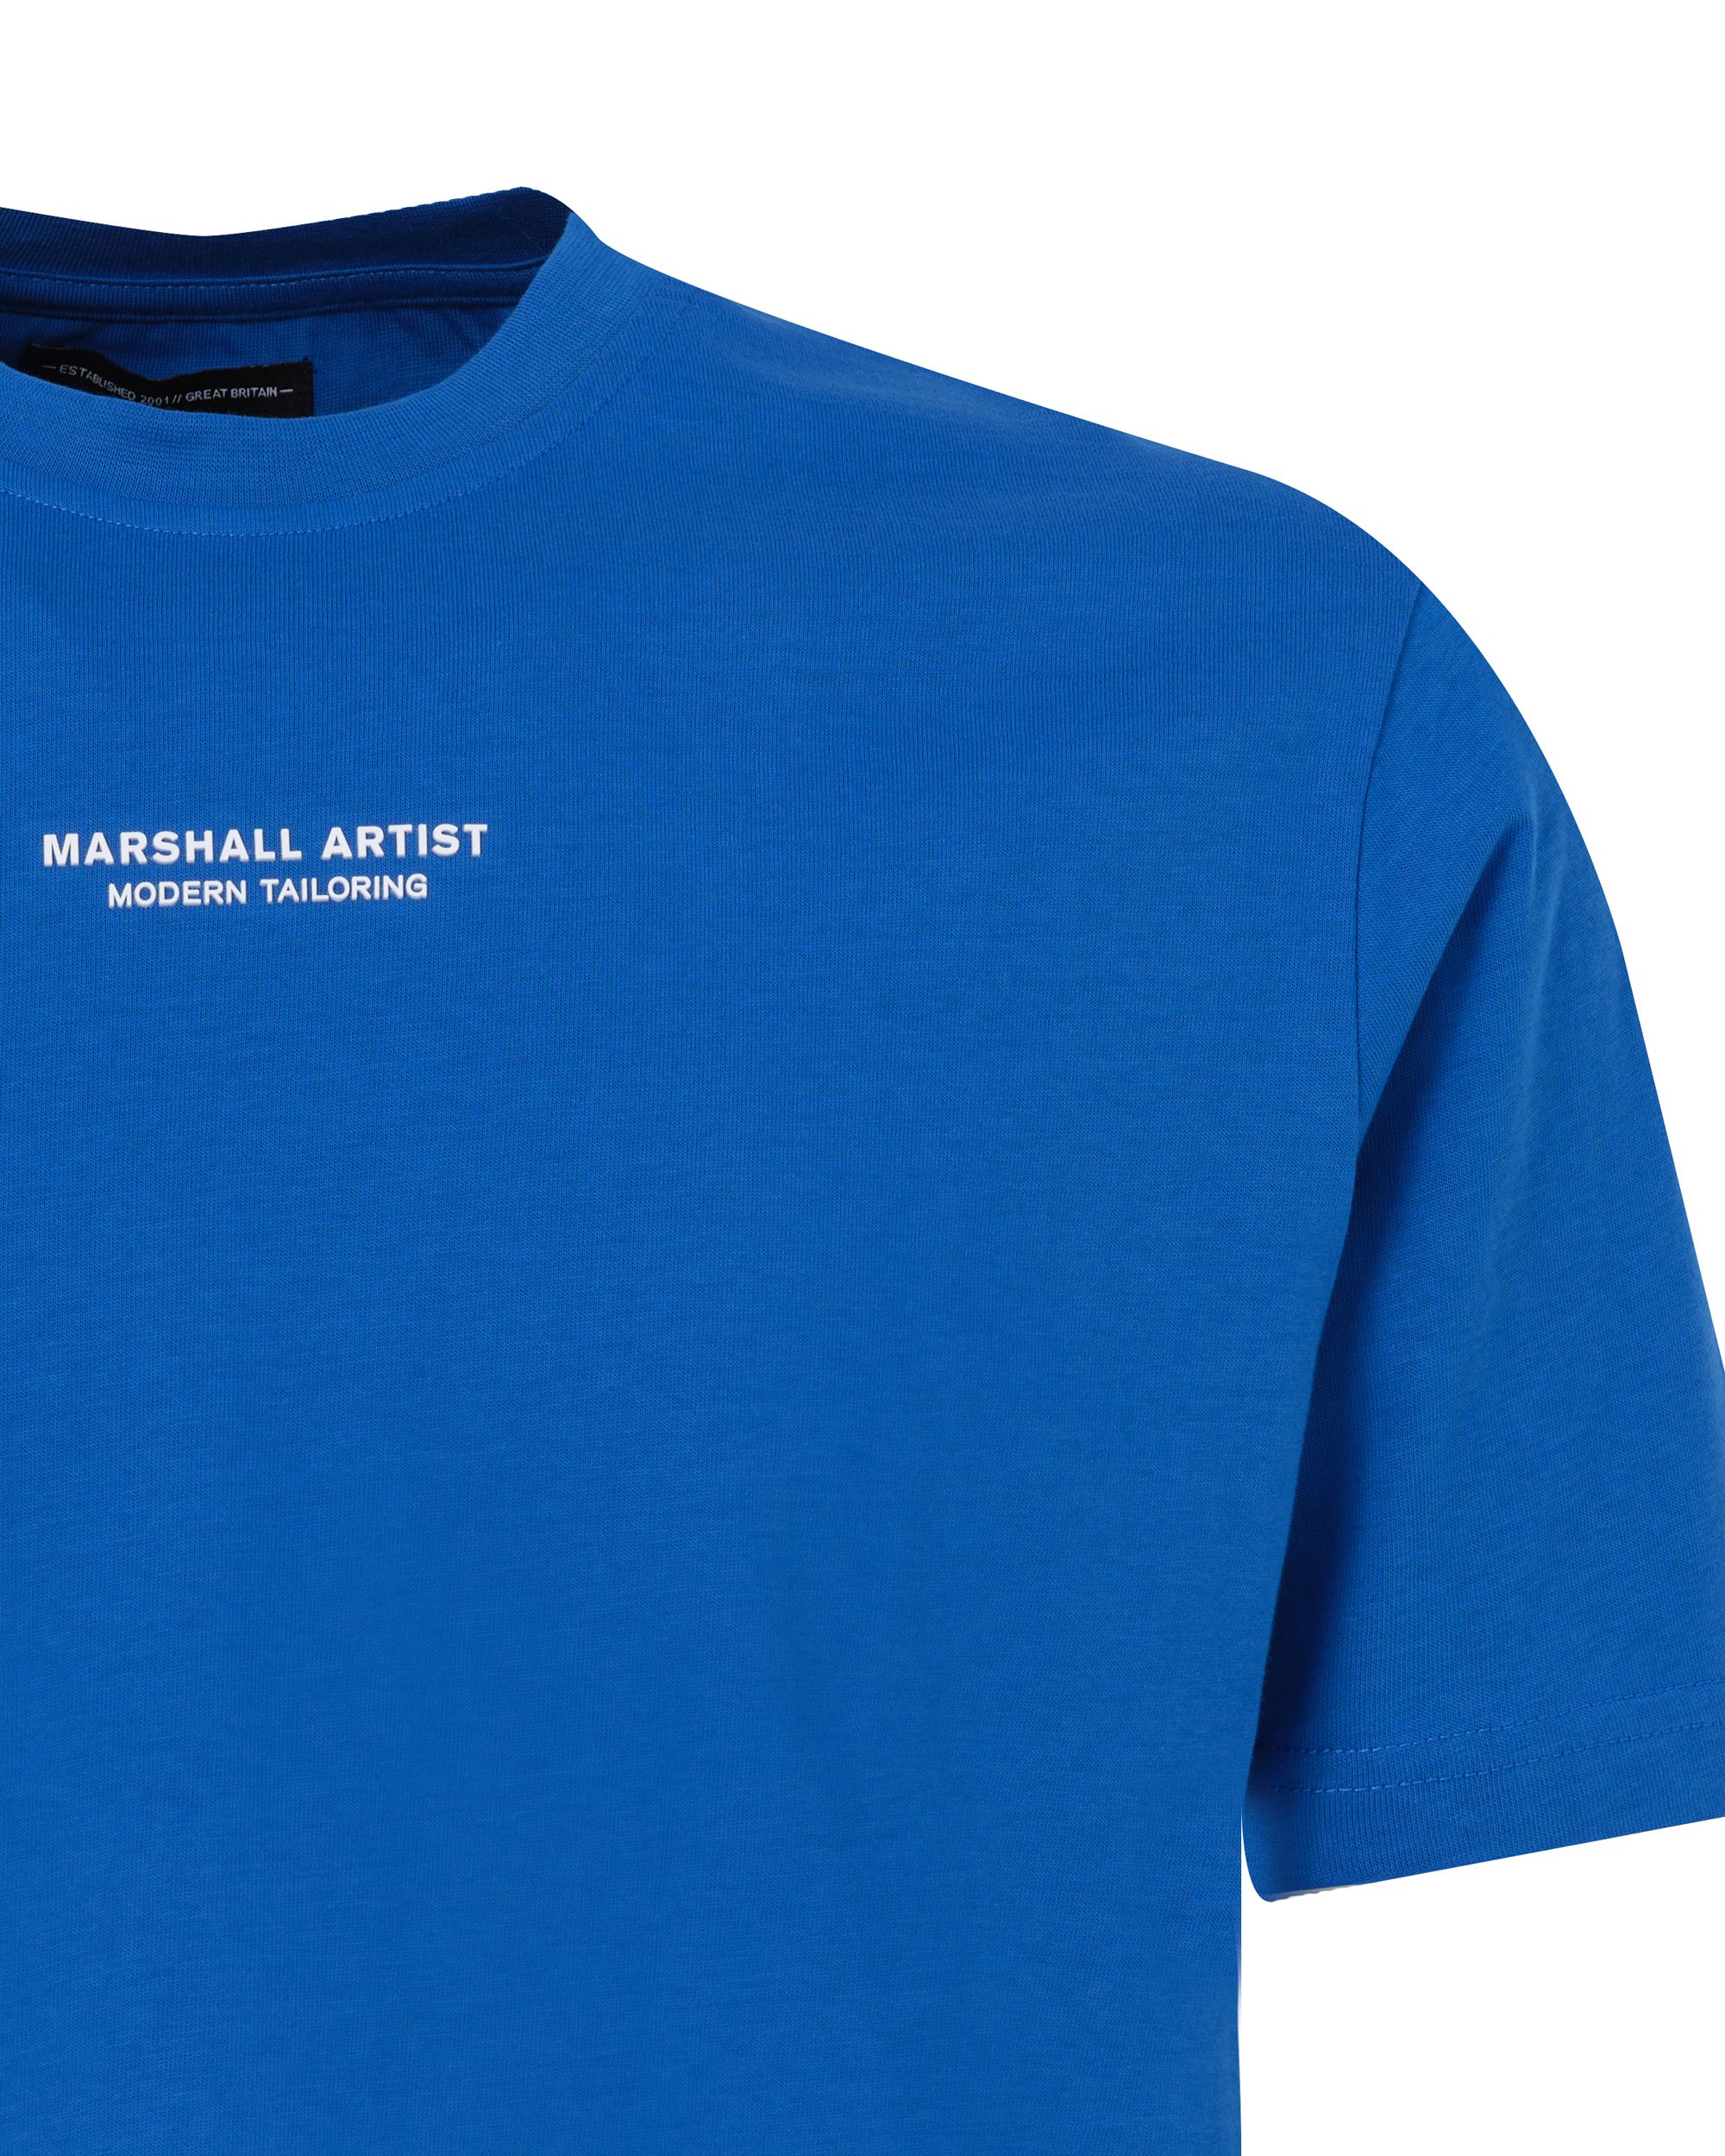 Marshall Artist T-shirt KM Blauw 083619-001-L